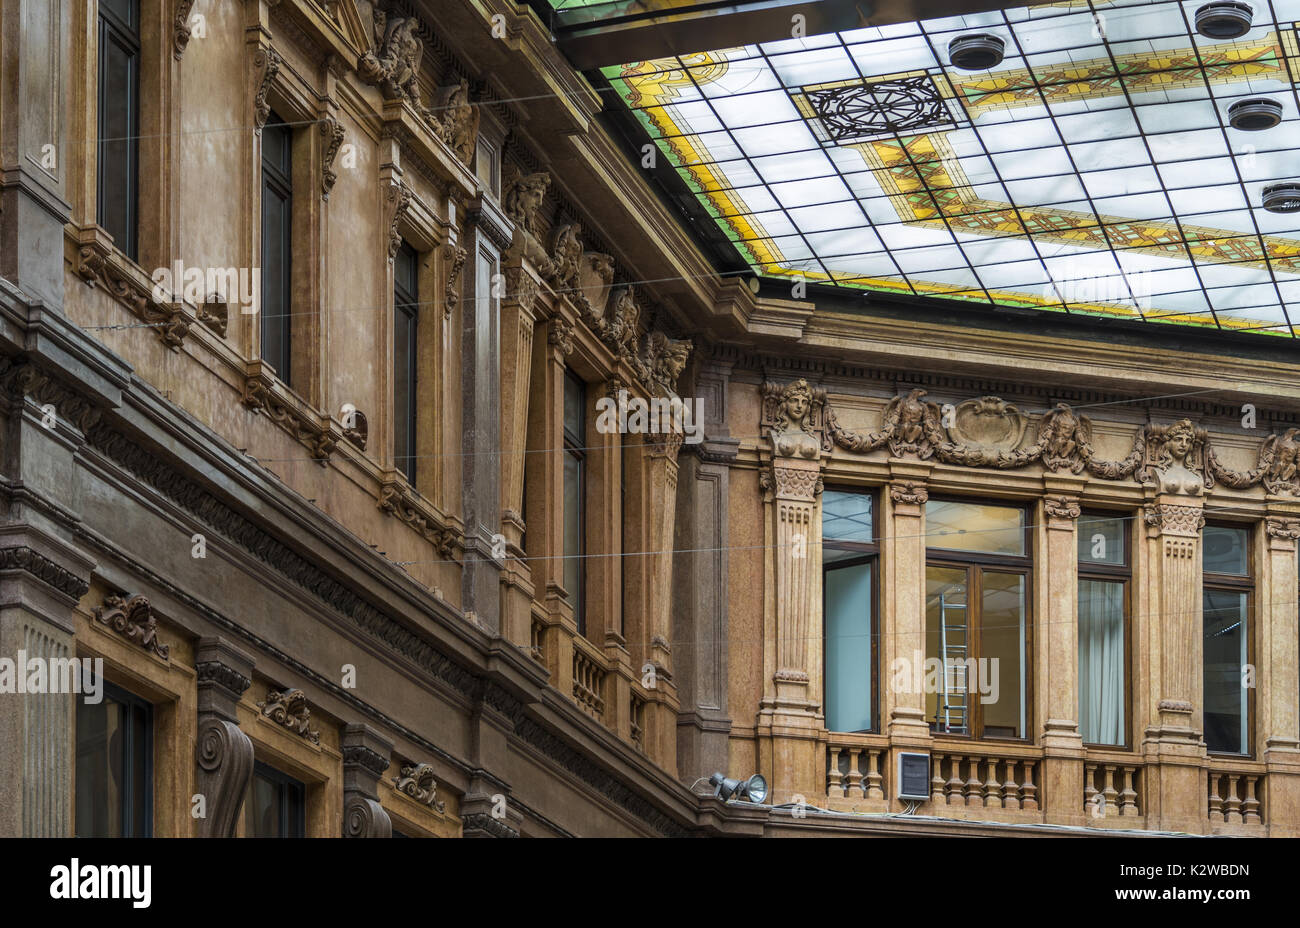 Détail d'un beau vitrail sur un toit. anciens bâtiments à Rome Italie. Banque D'Images